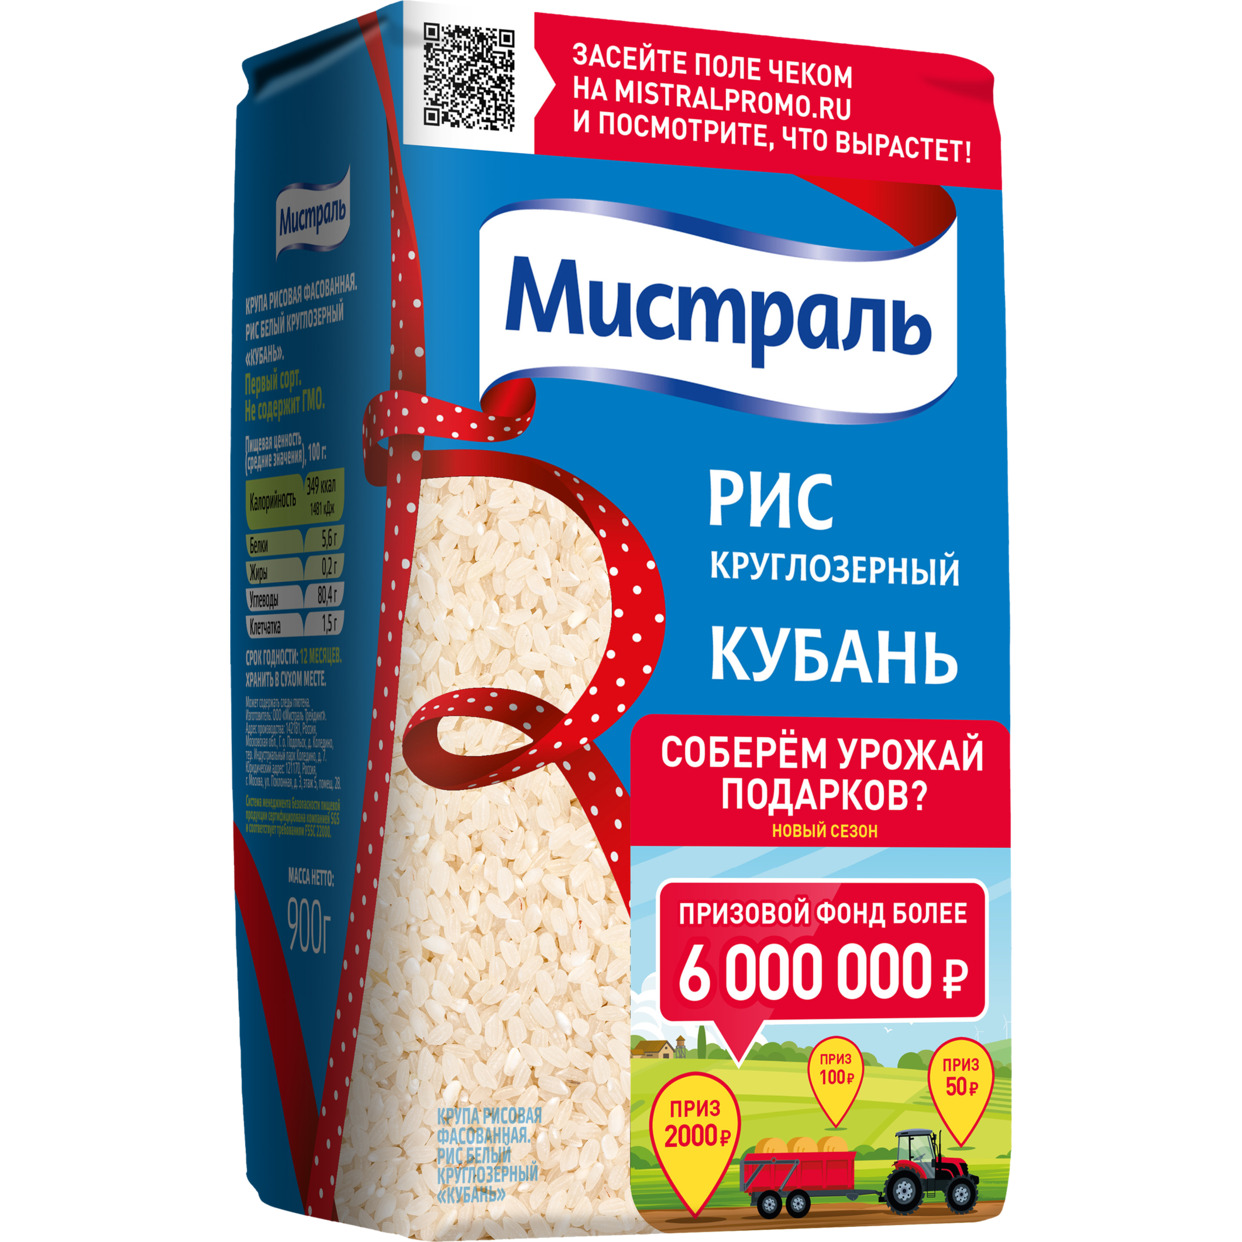 Рис Кубань, белый, круглозерный, Мистраль, 900 г по акции в Пятерочке